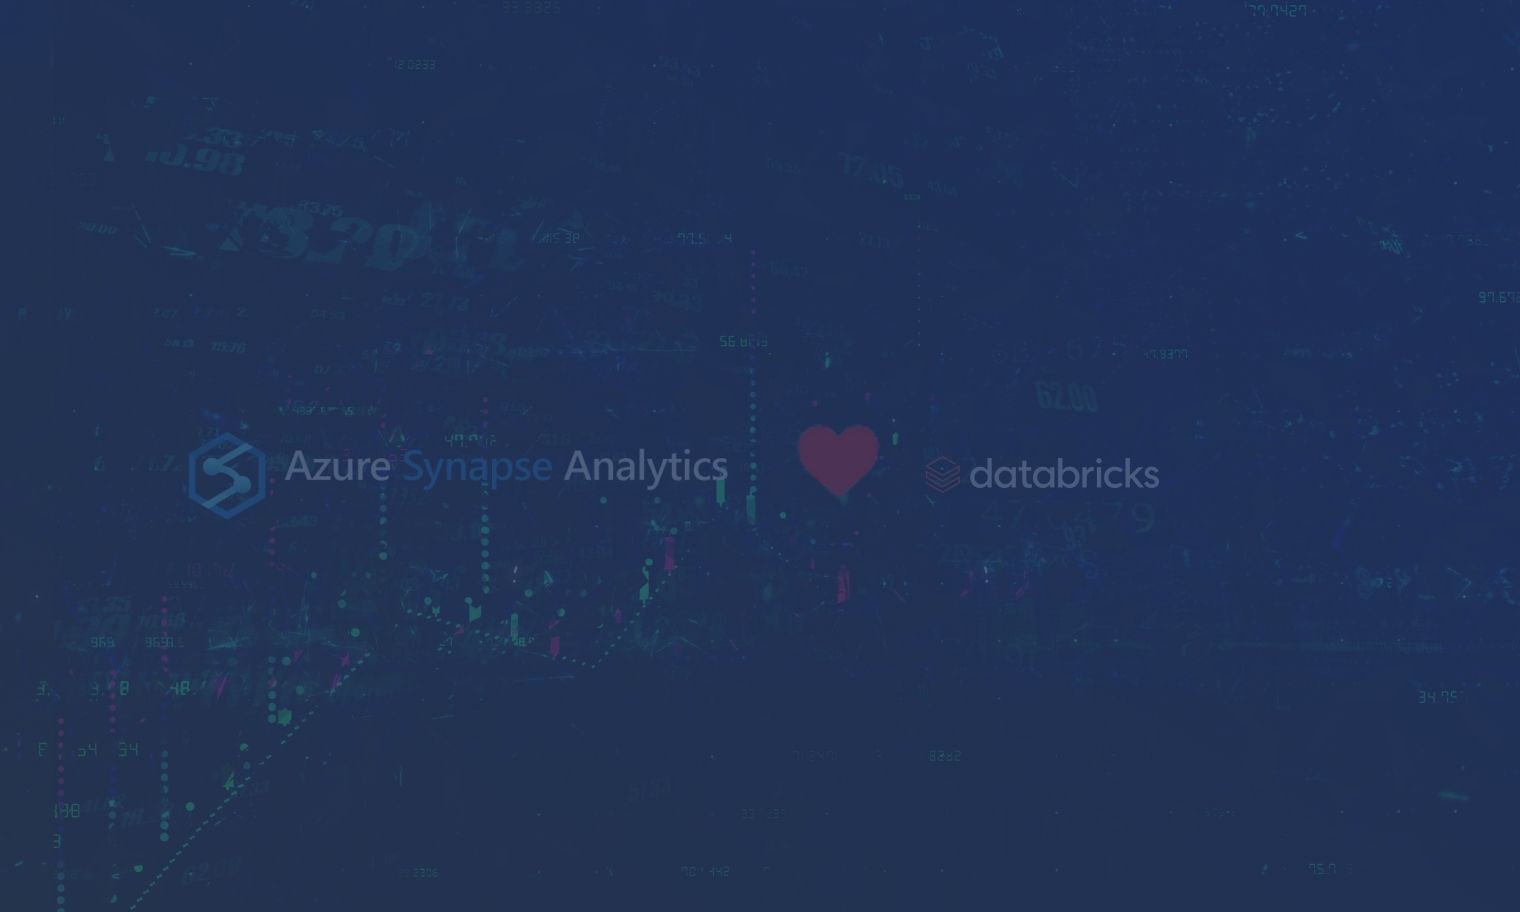 azure vs databricks